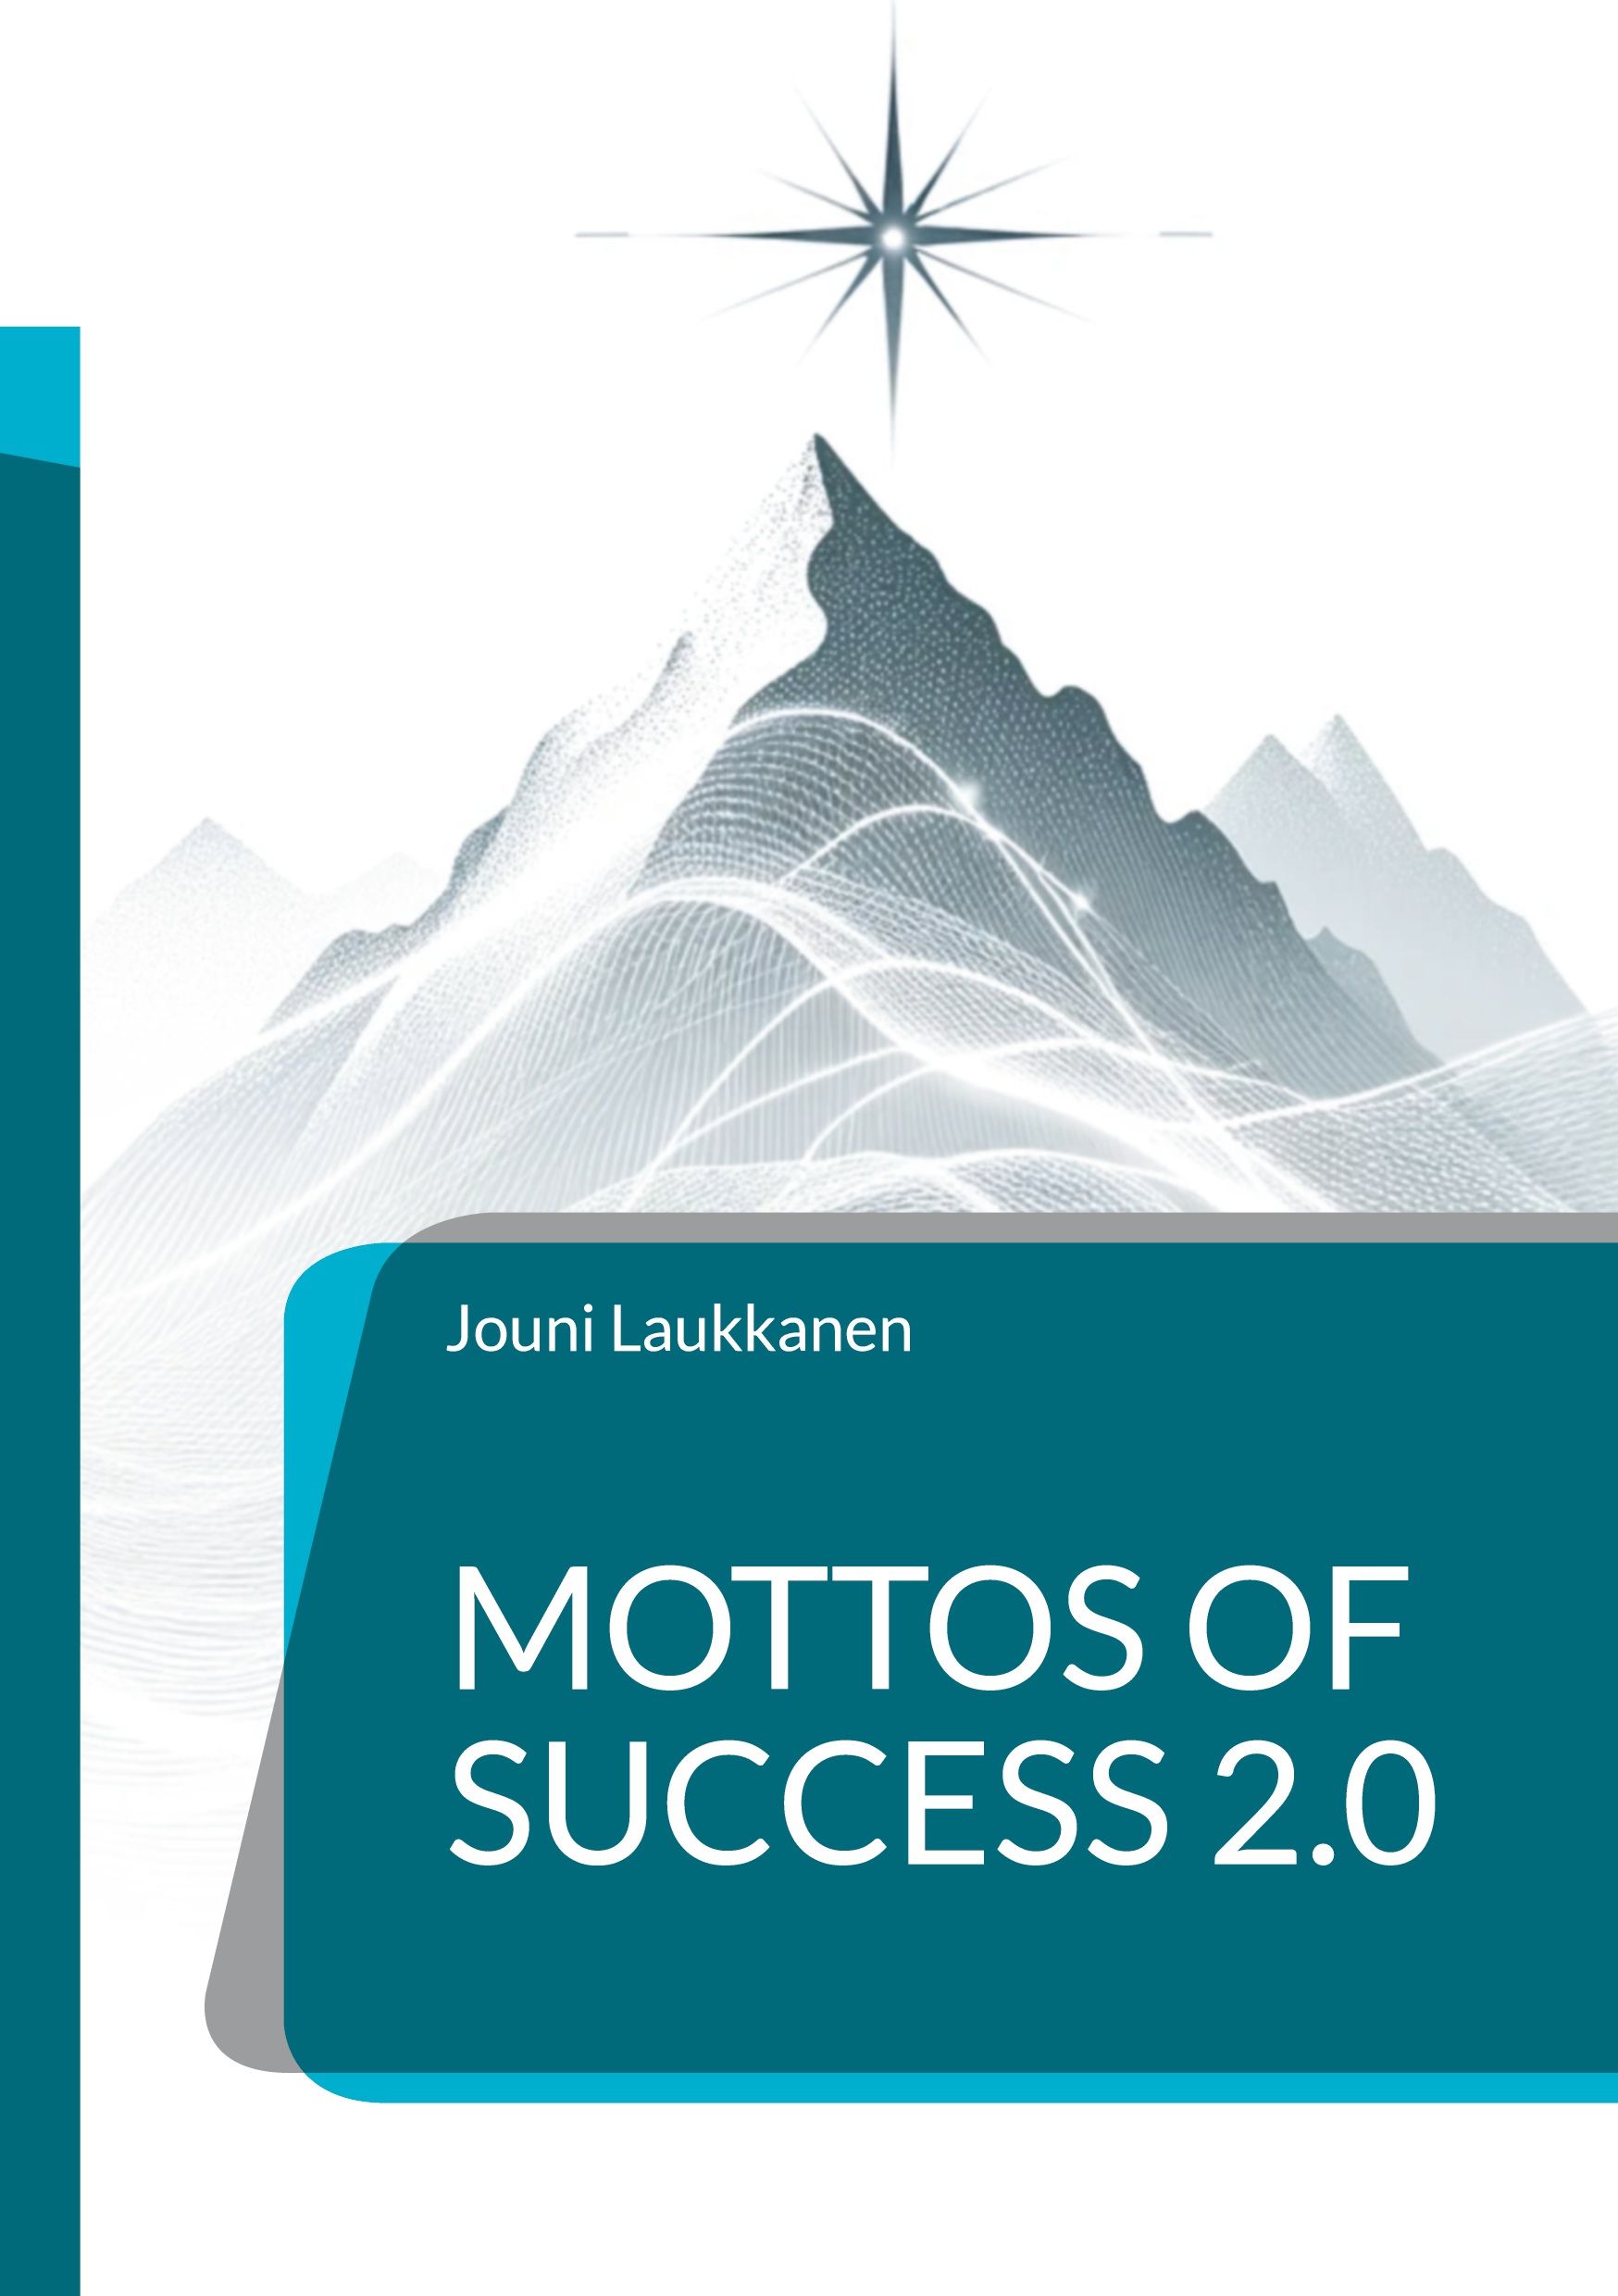 Jouni Laukkanen : Mottos of Success 2.0